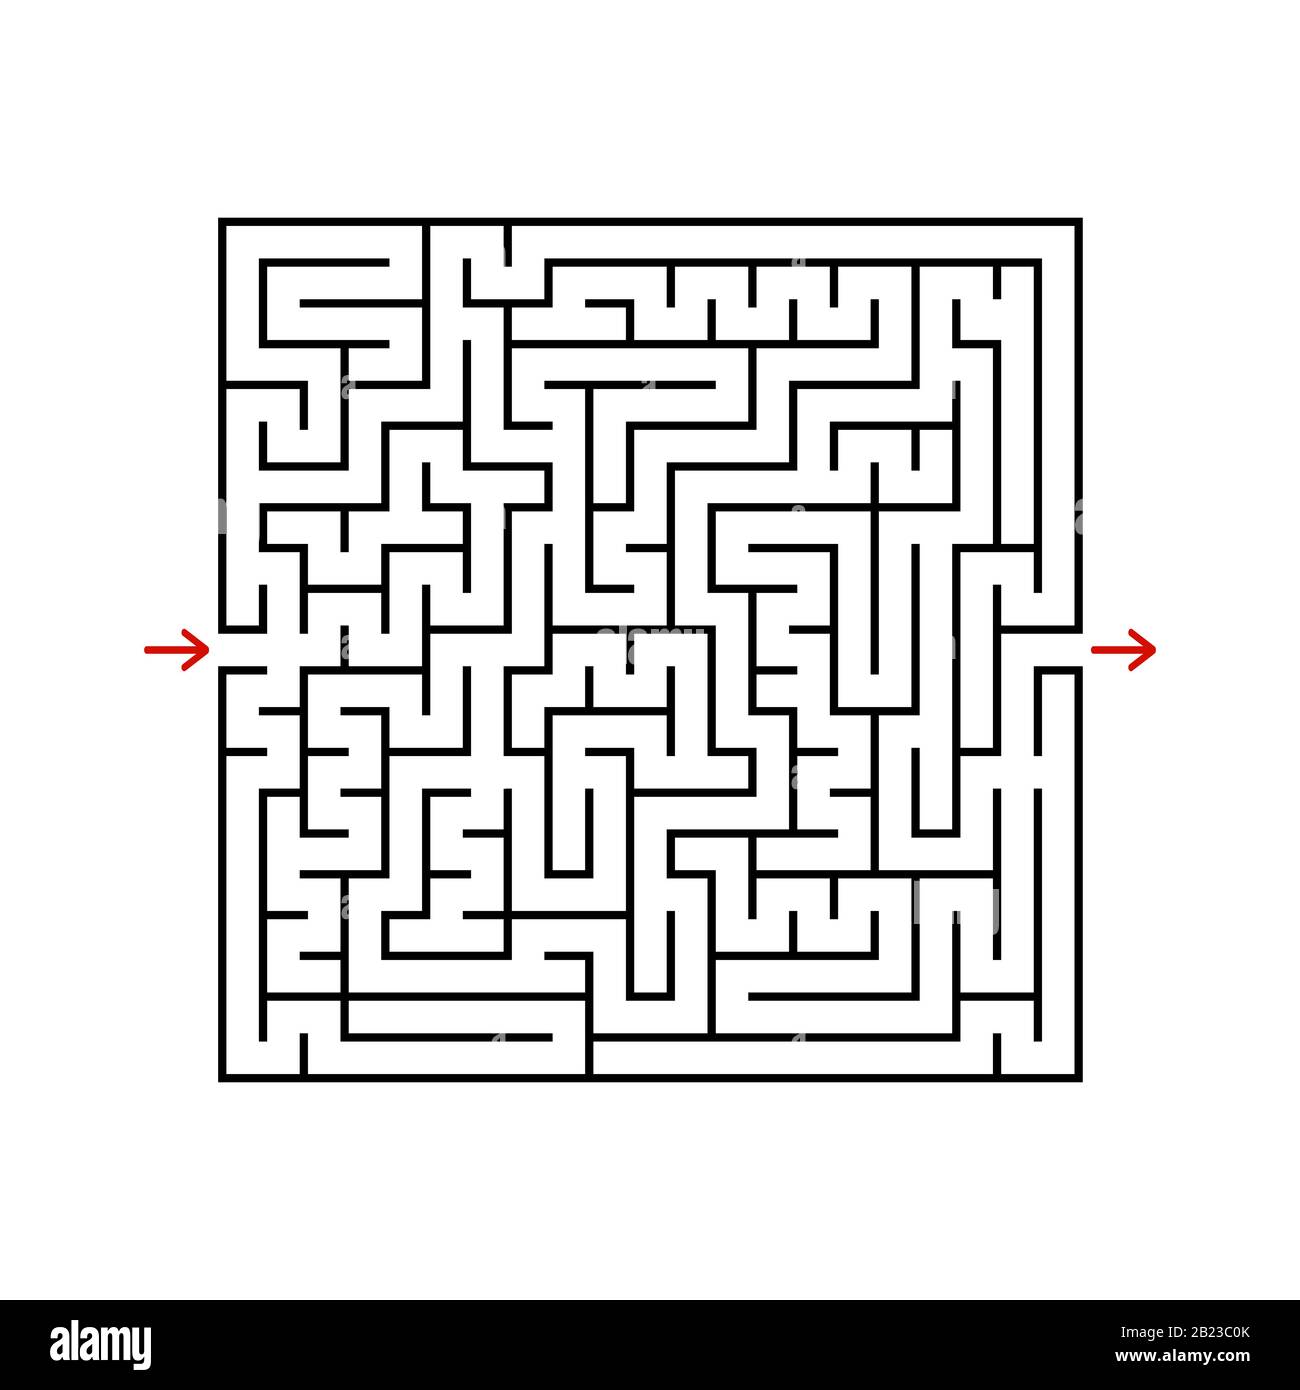 Schwarzes quadratisches Labyrinth mit ein- und Ausgang. Ein Spiel für Kinder und Erwachsene. Einfache flache Vektorgrafiken isoliert auf weißem Hintergrund Stock Vektor